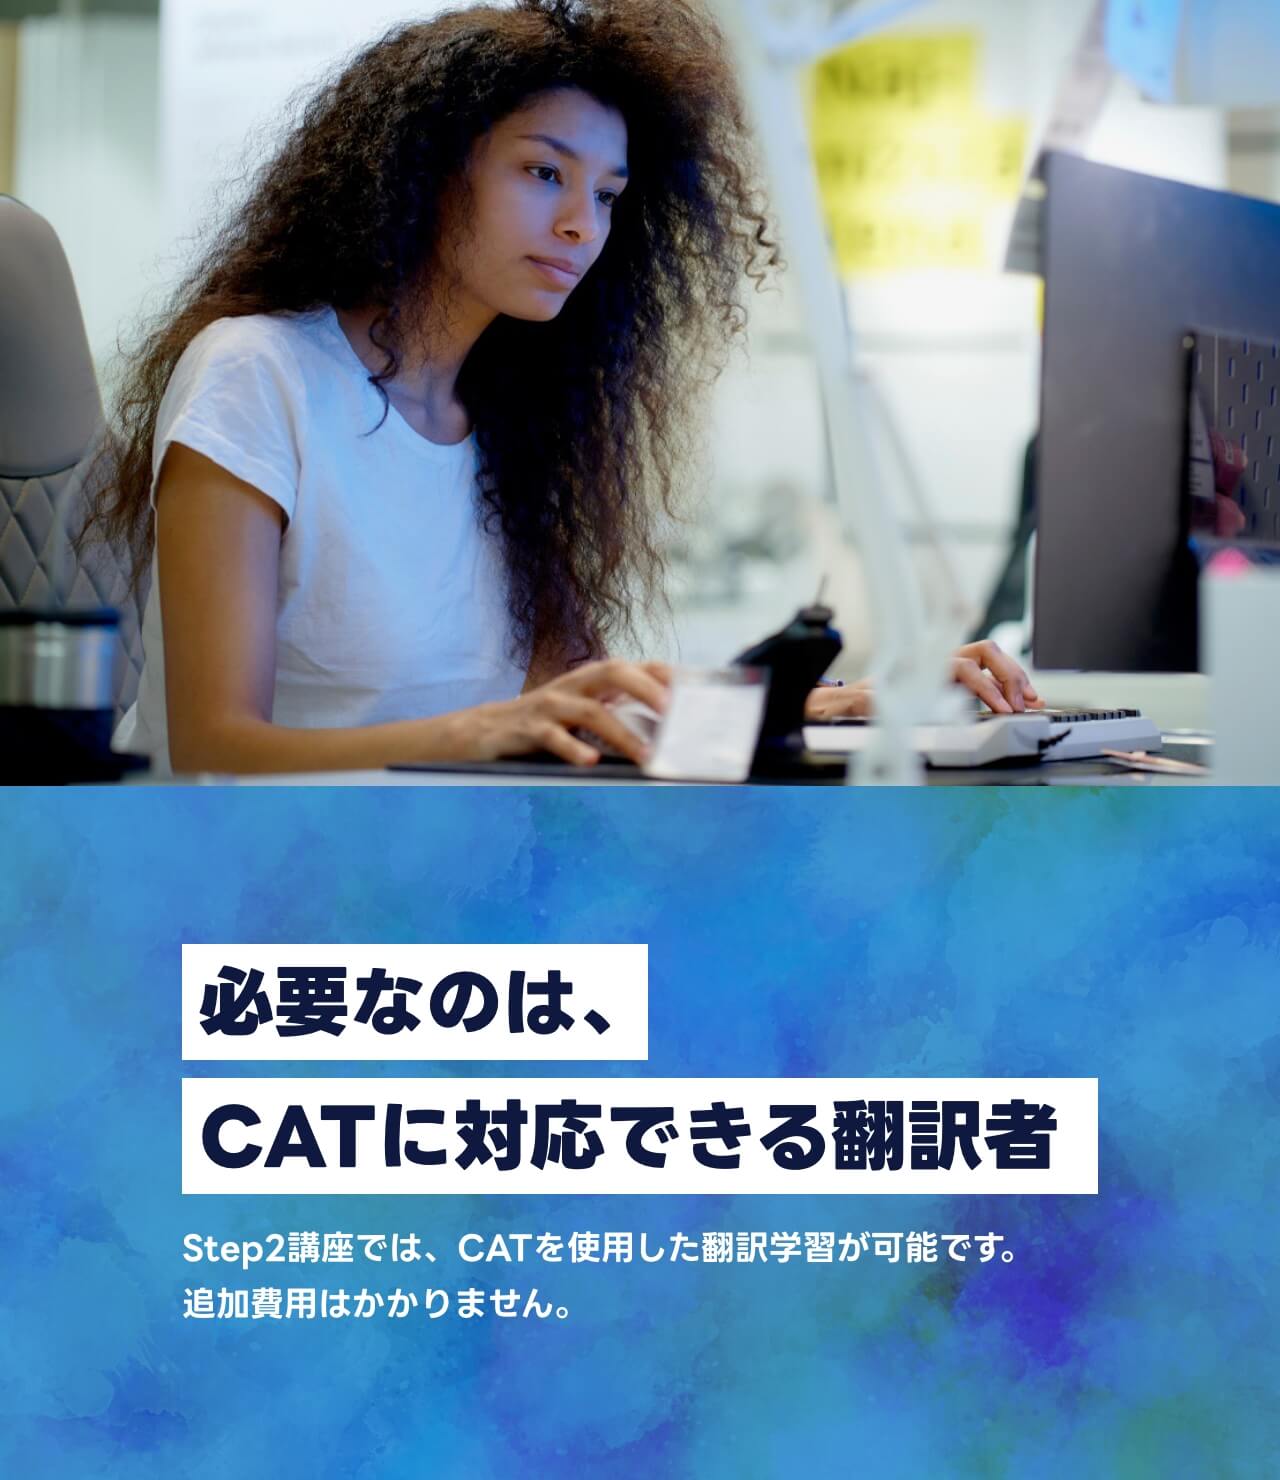 必要なのは、CATに対応できる翻訳者